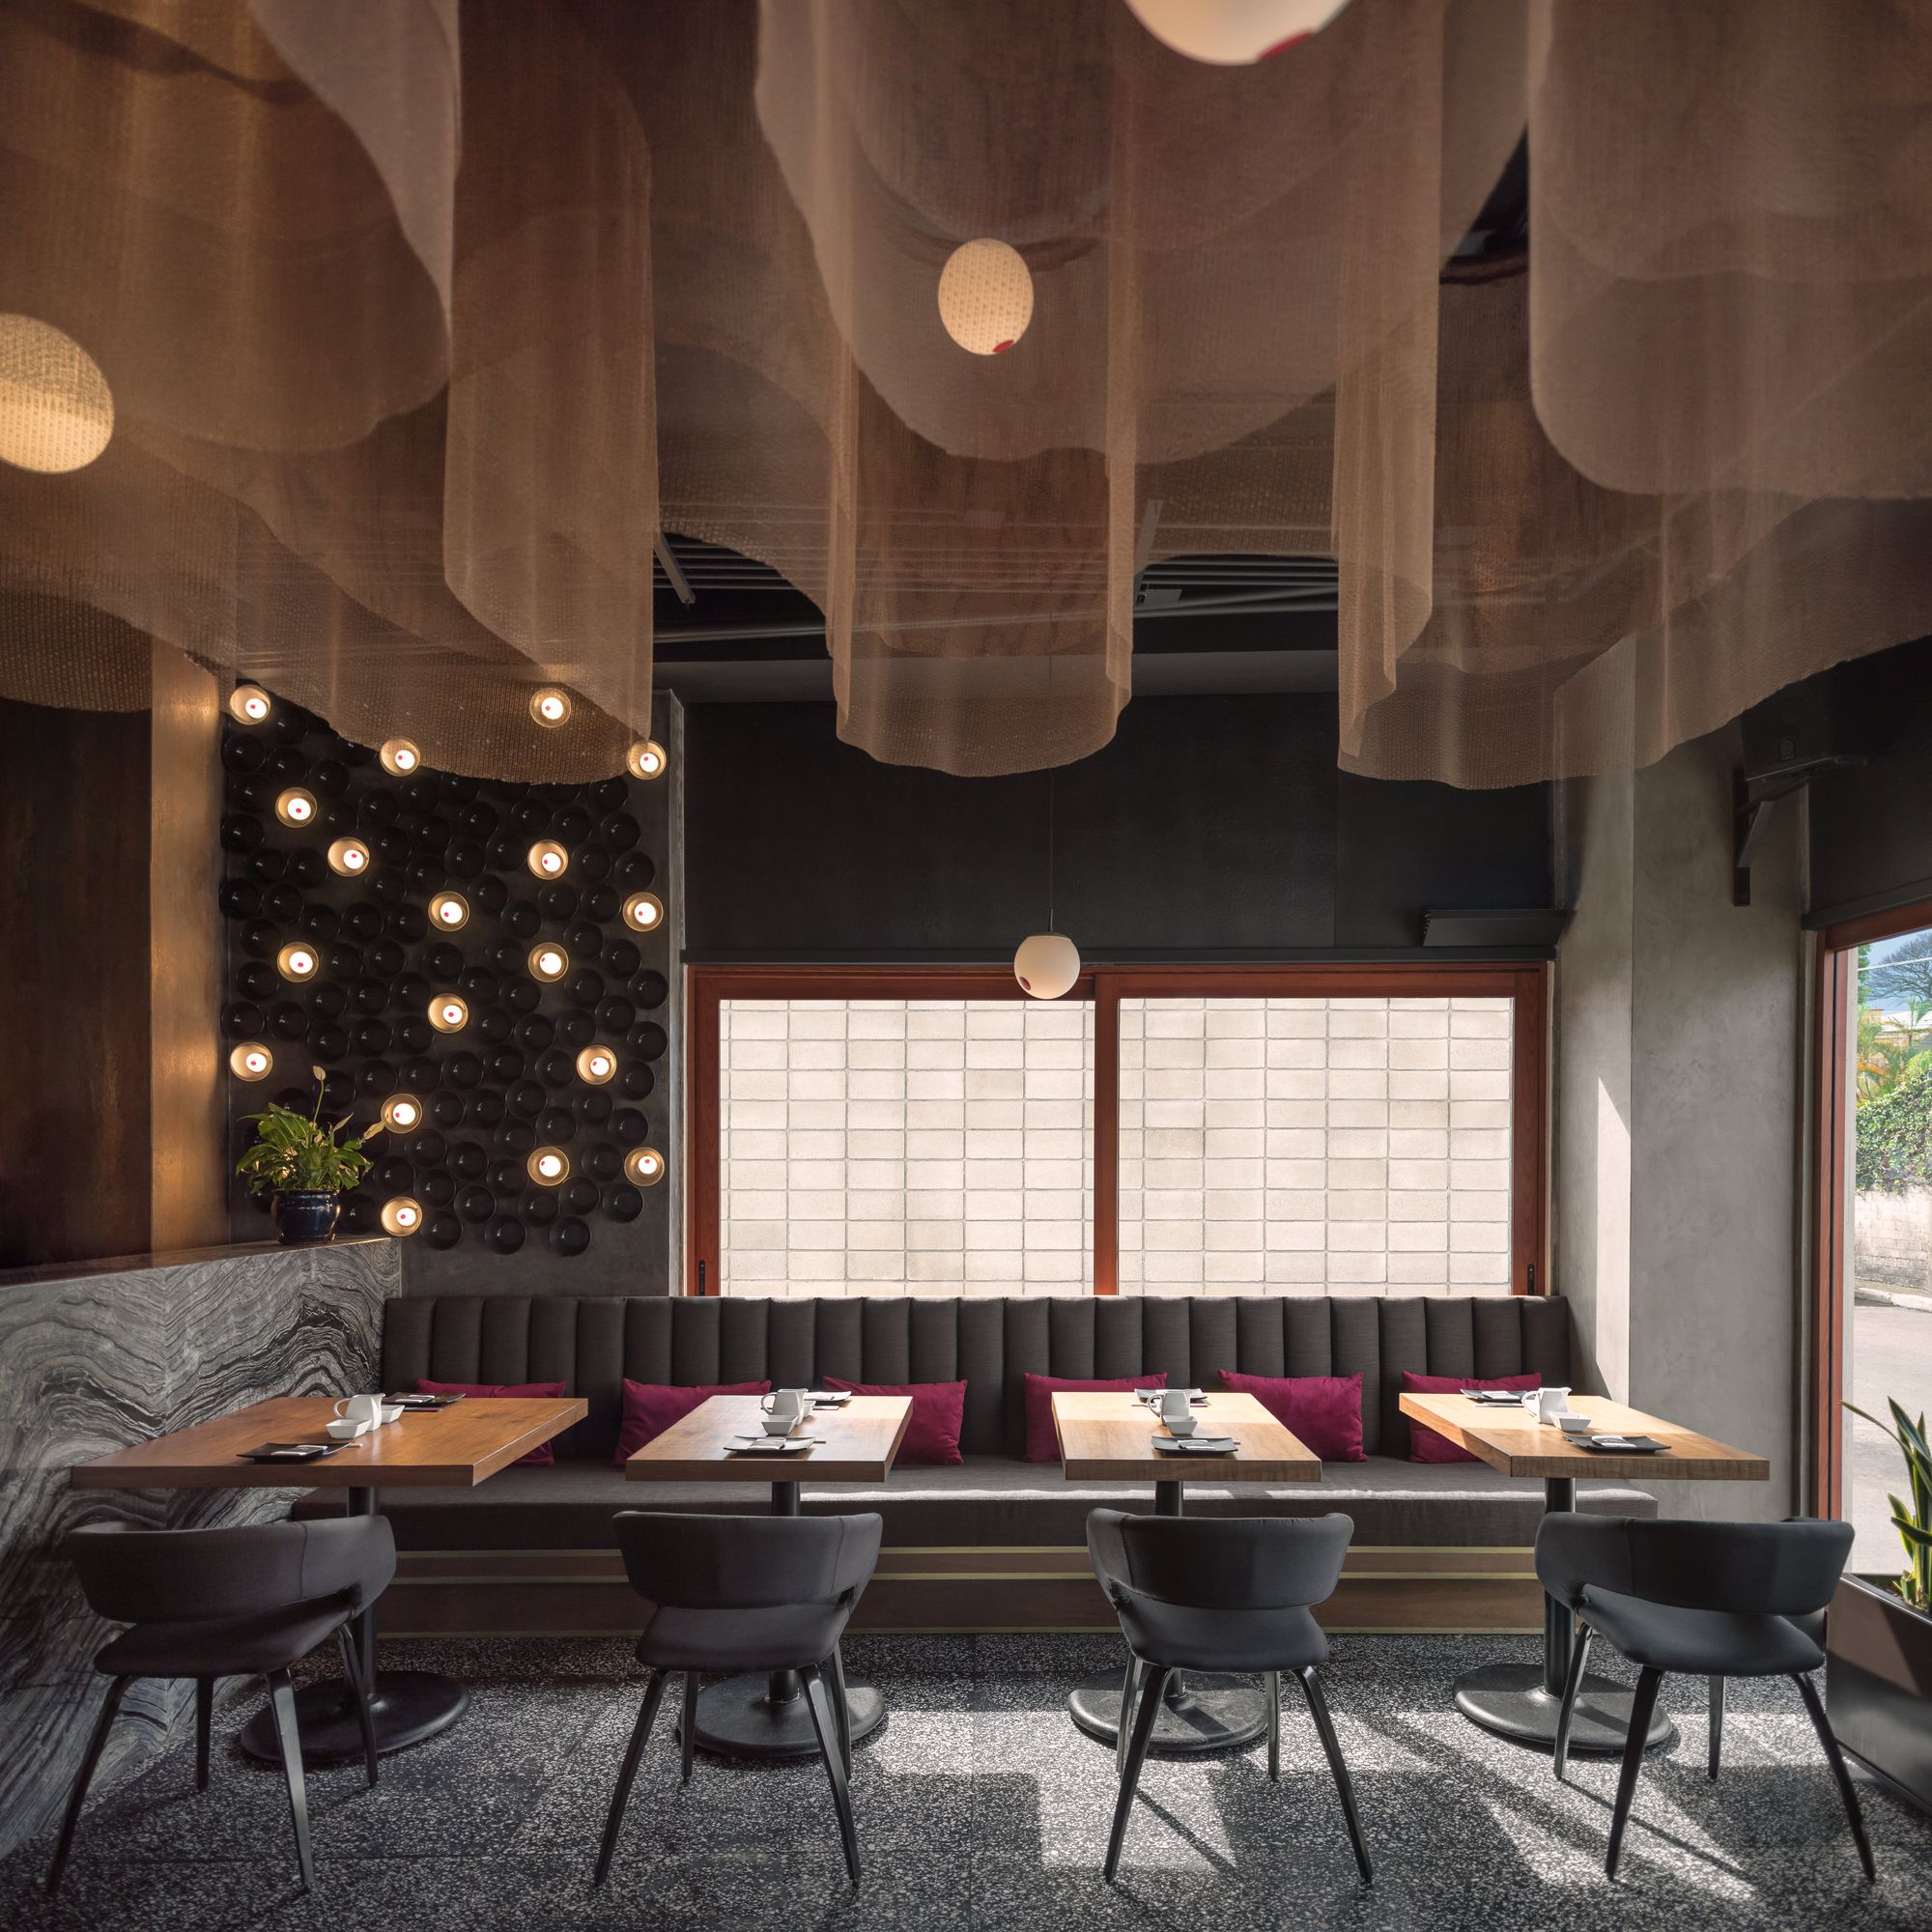 图片[9]|Domu餐厅|ART-Arrakis | 建筑室内设计的创新与灵感